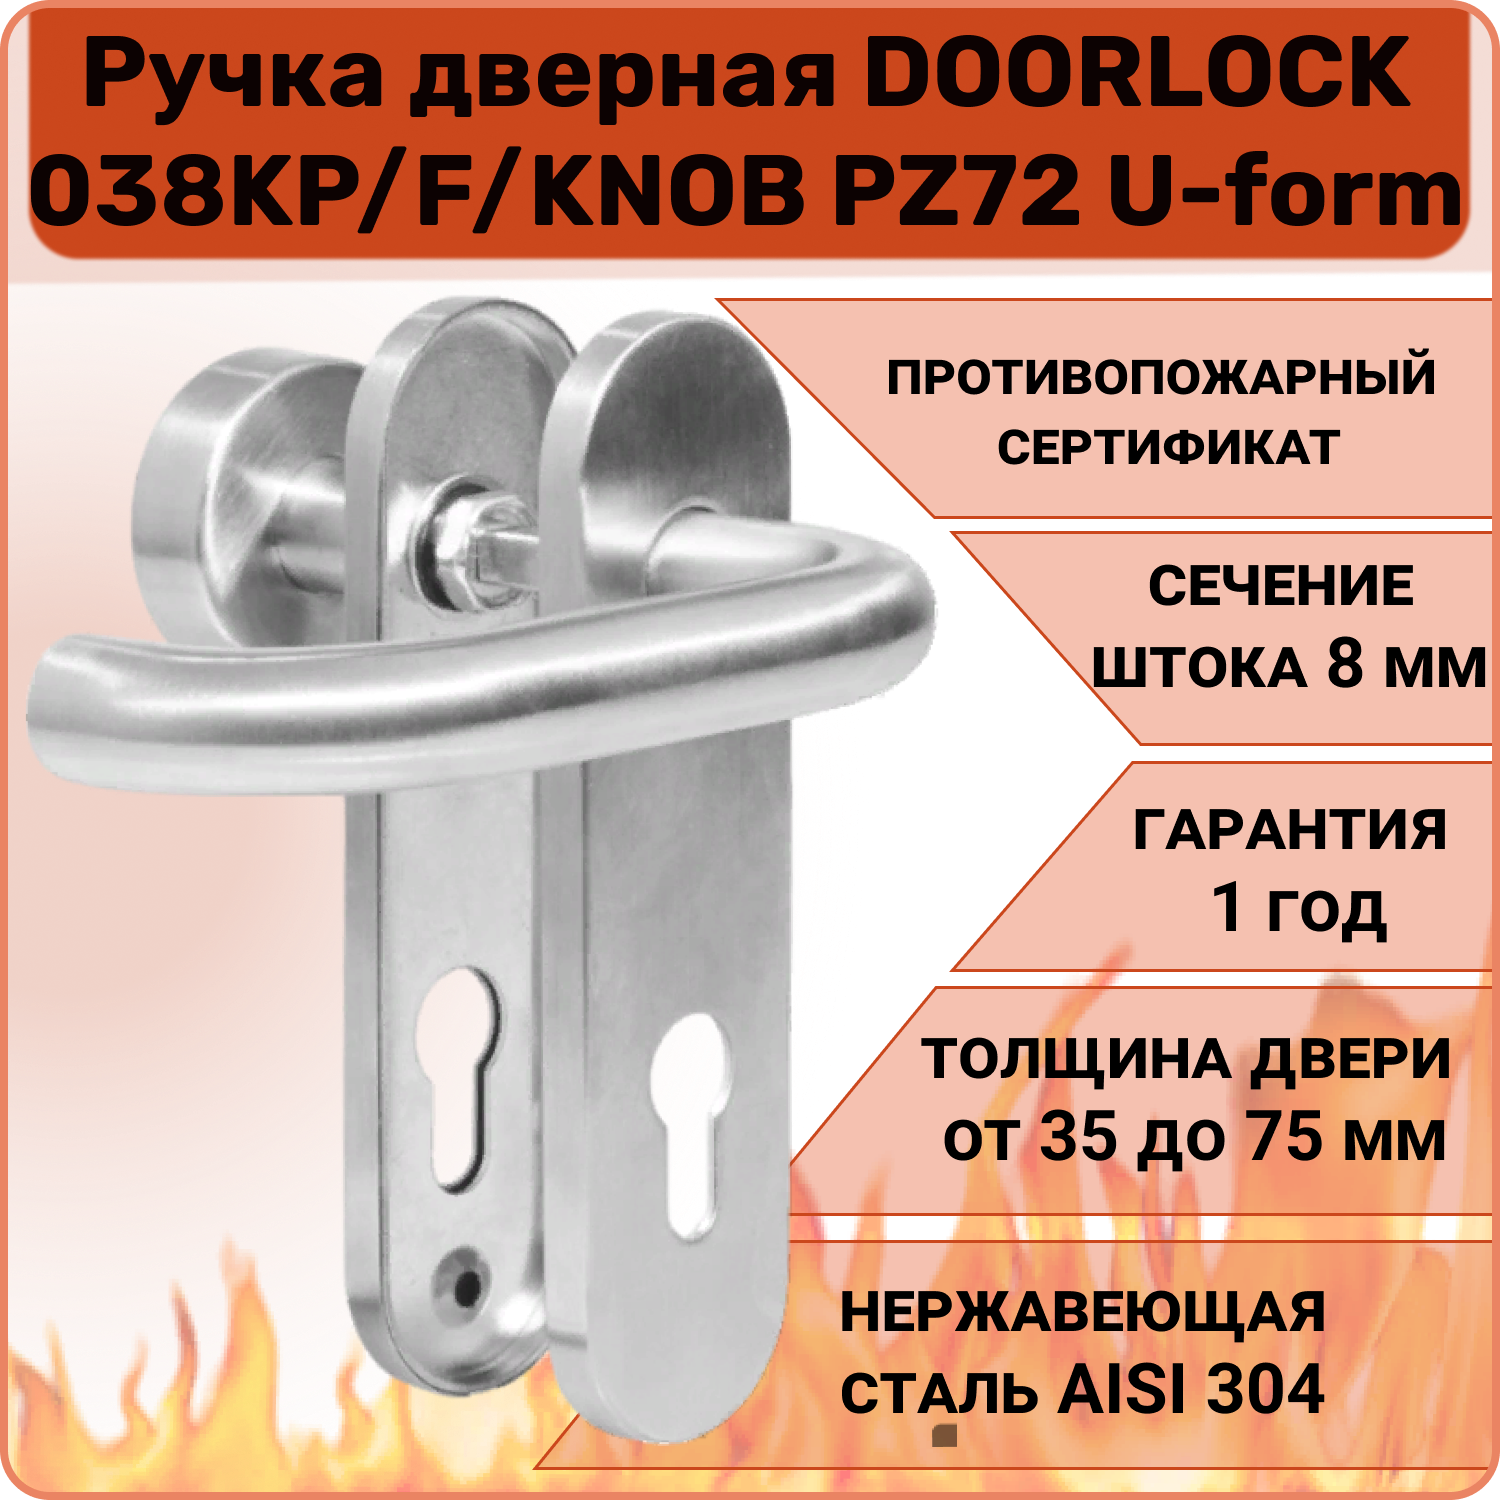 Ручка дверная противопожарная DOORLOCK 038KP/F/KNOB правая PZ72 U-form, матовая нержавеющая сталь